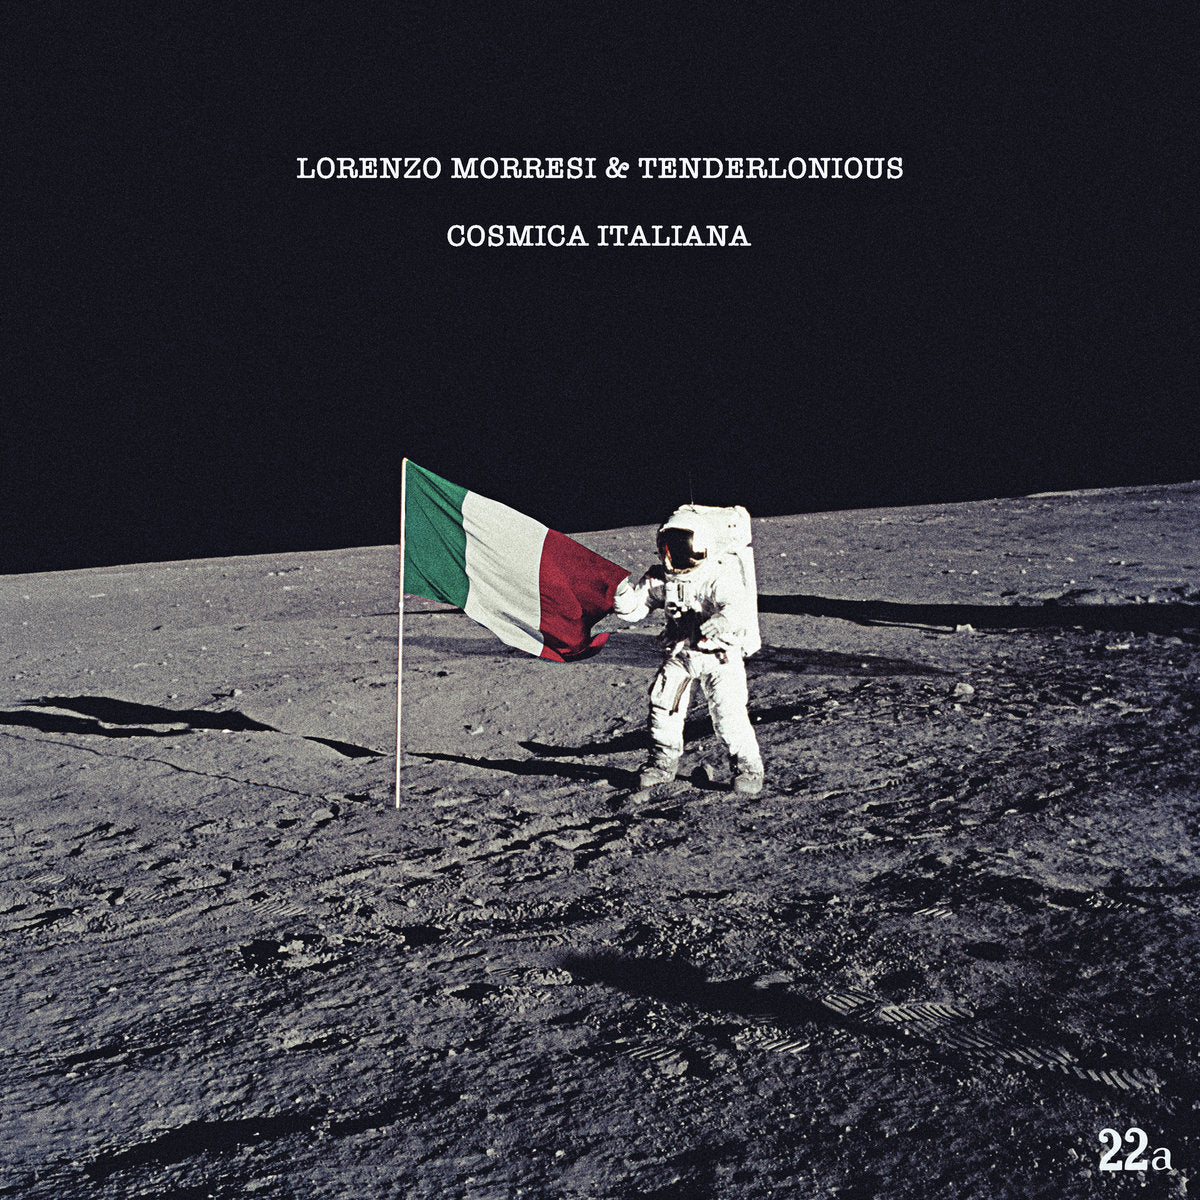  |  Vinyl LP | Lorenzo & Tenderlonious Morresi - Cosmica Italiana (2 LPs) | Records on Vinyl